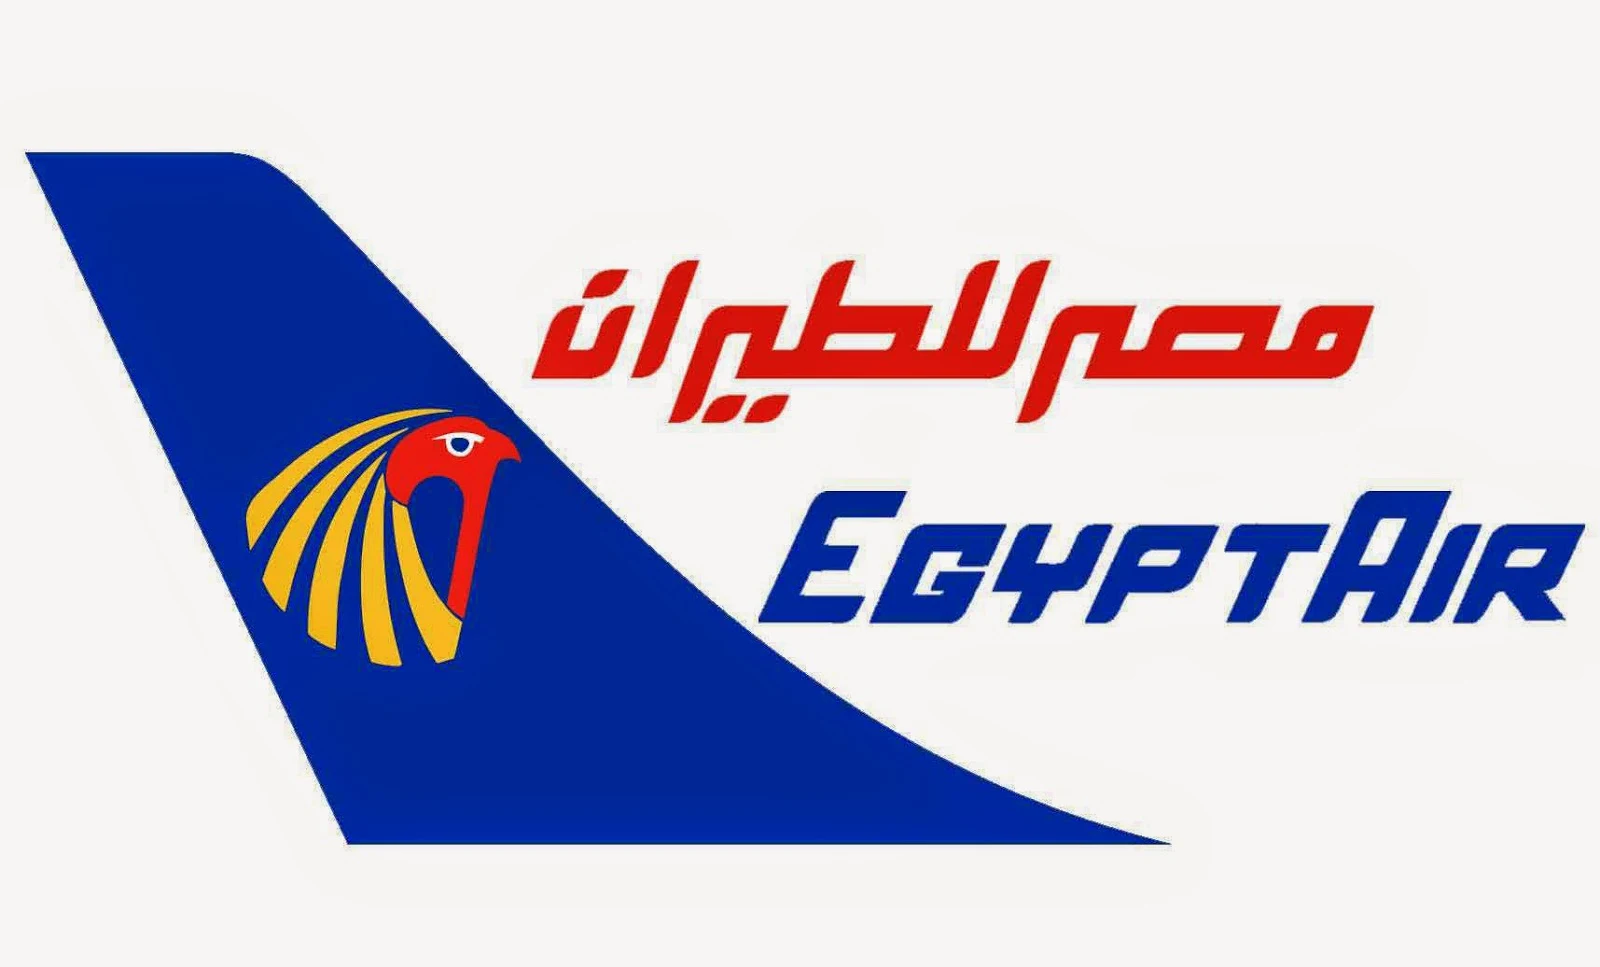 اسعار تذاكر الطيران من مصر الى السعودية 2018 حجز تذاكر طيران رخيصة الي السعودية